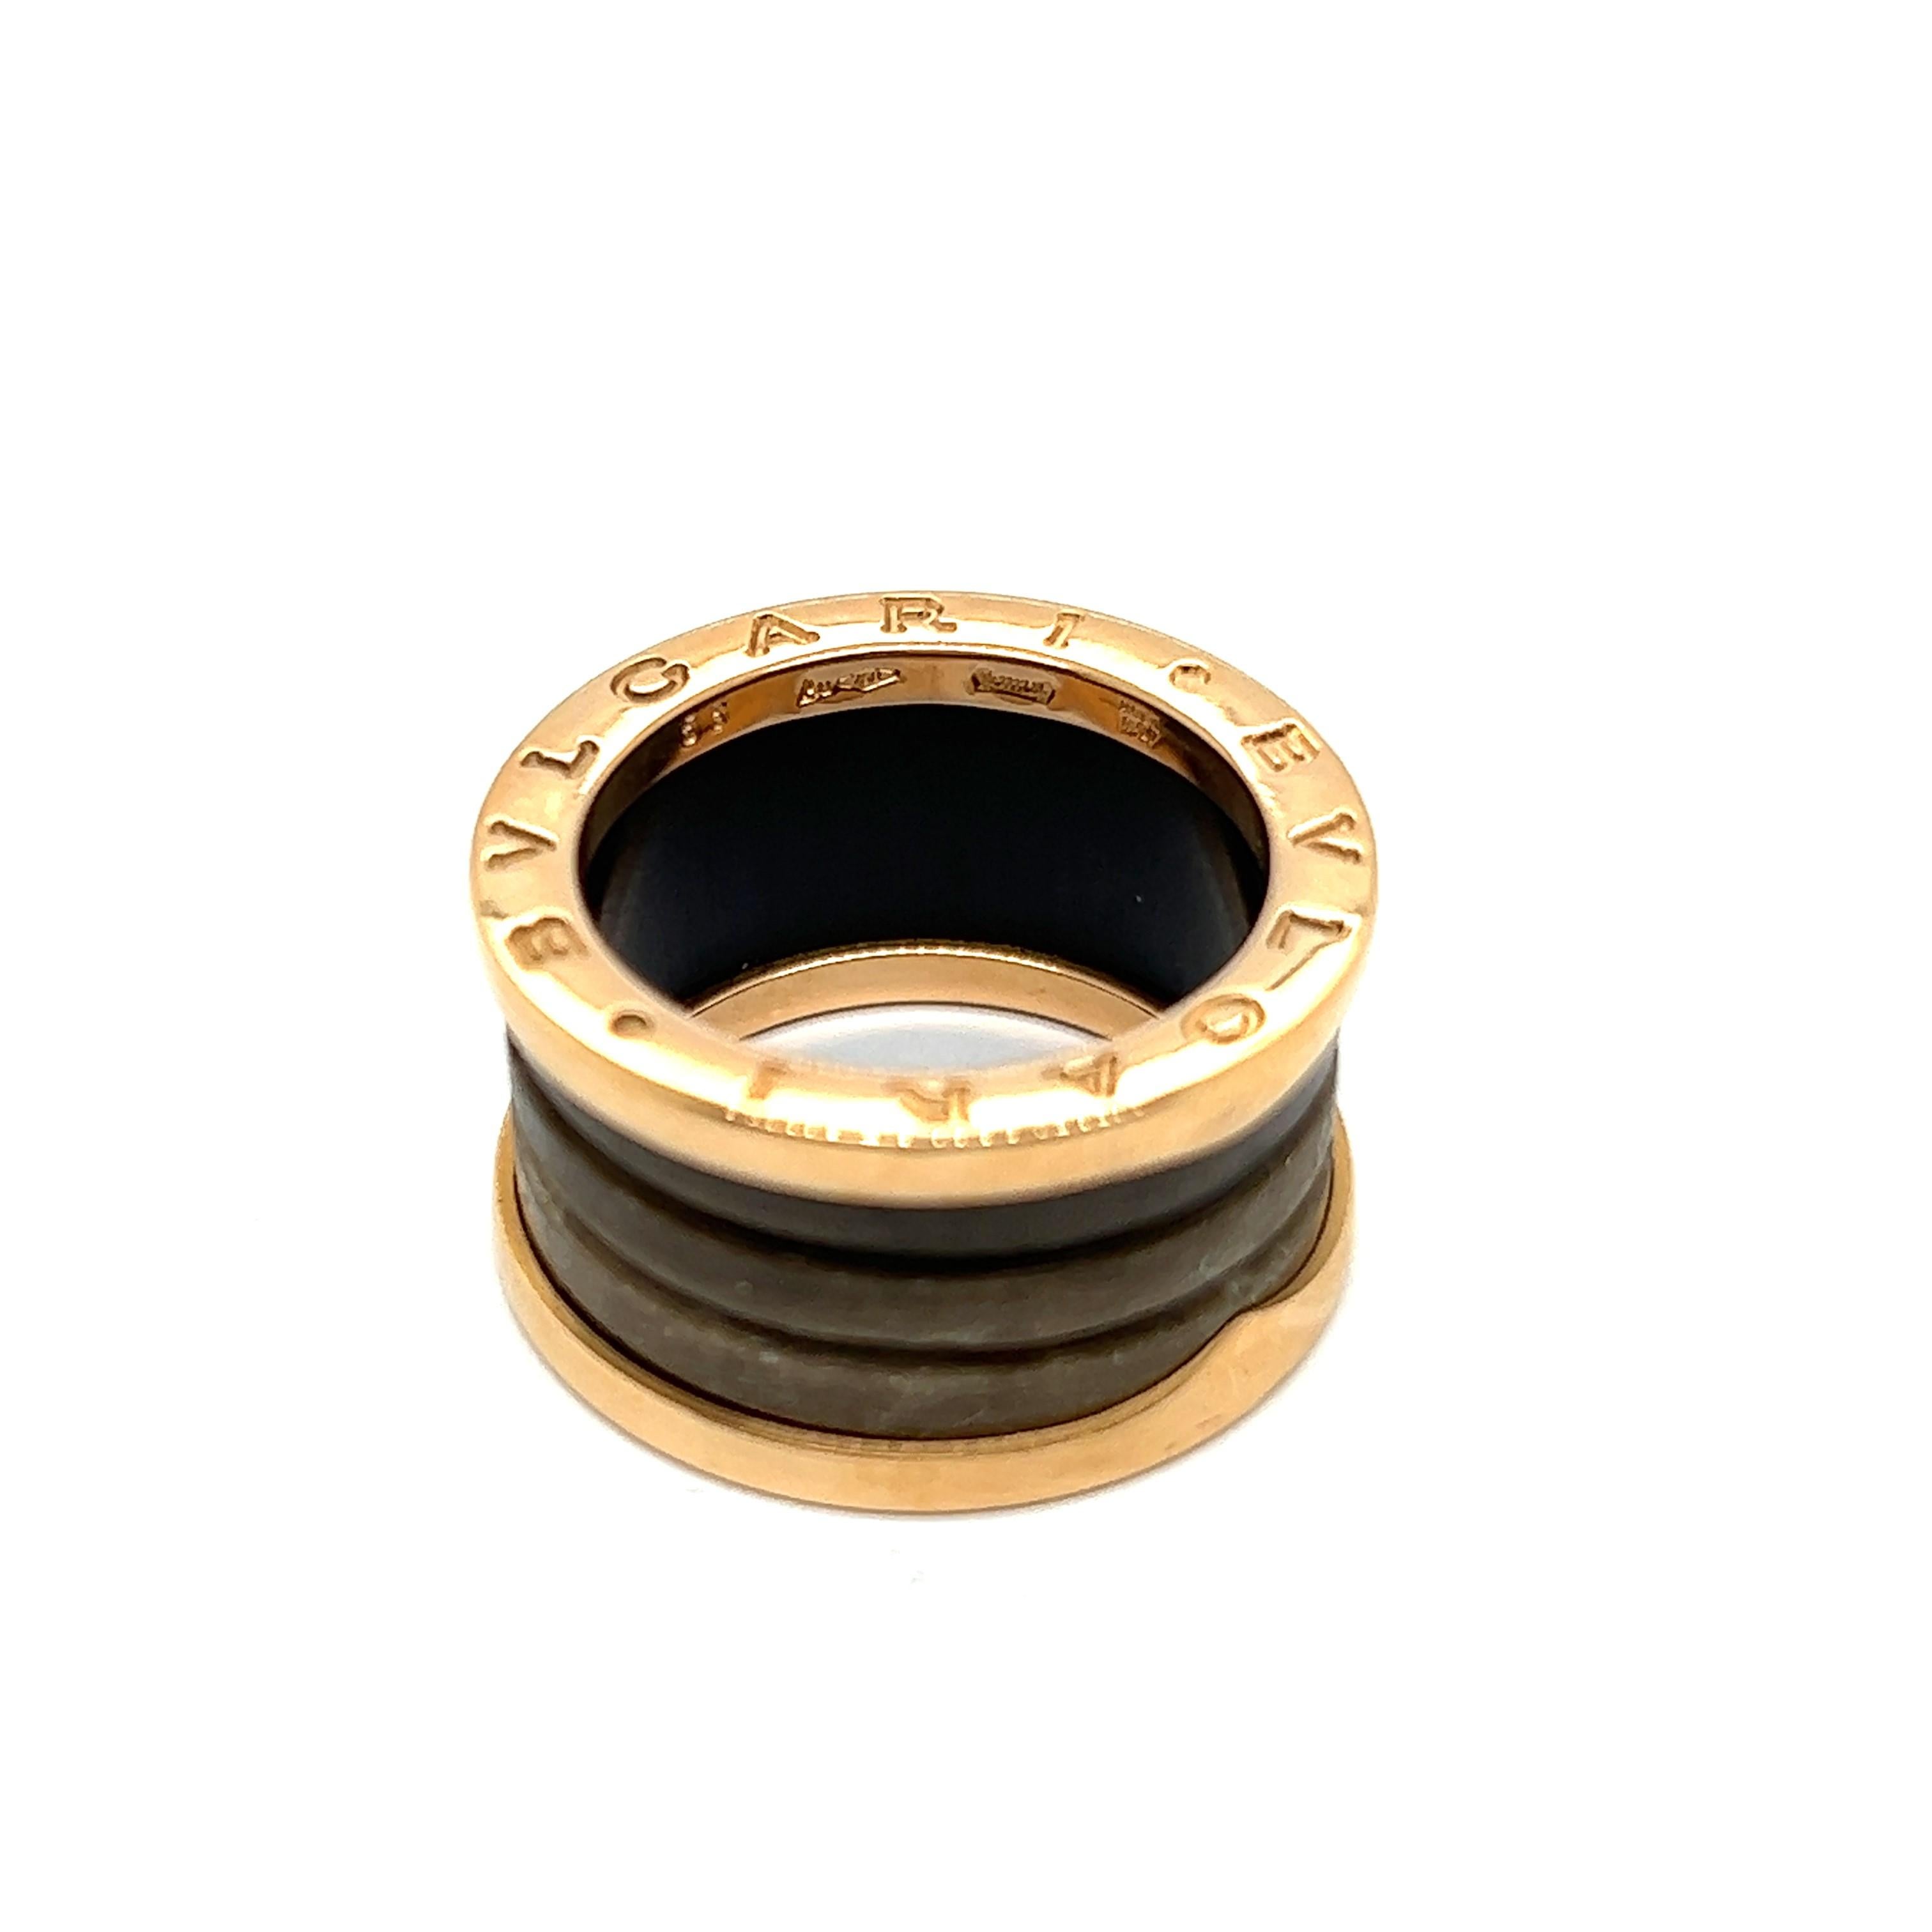 Der ikonische Bzero1 Ring von Bvlgari - eine nahtlose Mischung aus Anmut und Einfallsreichtum. Dieser Ring ist aus glänzendem 18-karätigem Roségold mit einem Mittelstück aus Achat gefertigt. Manche Menschen glauben, dass der Achat Bindungen stärkt